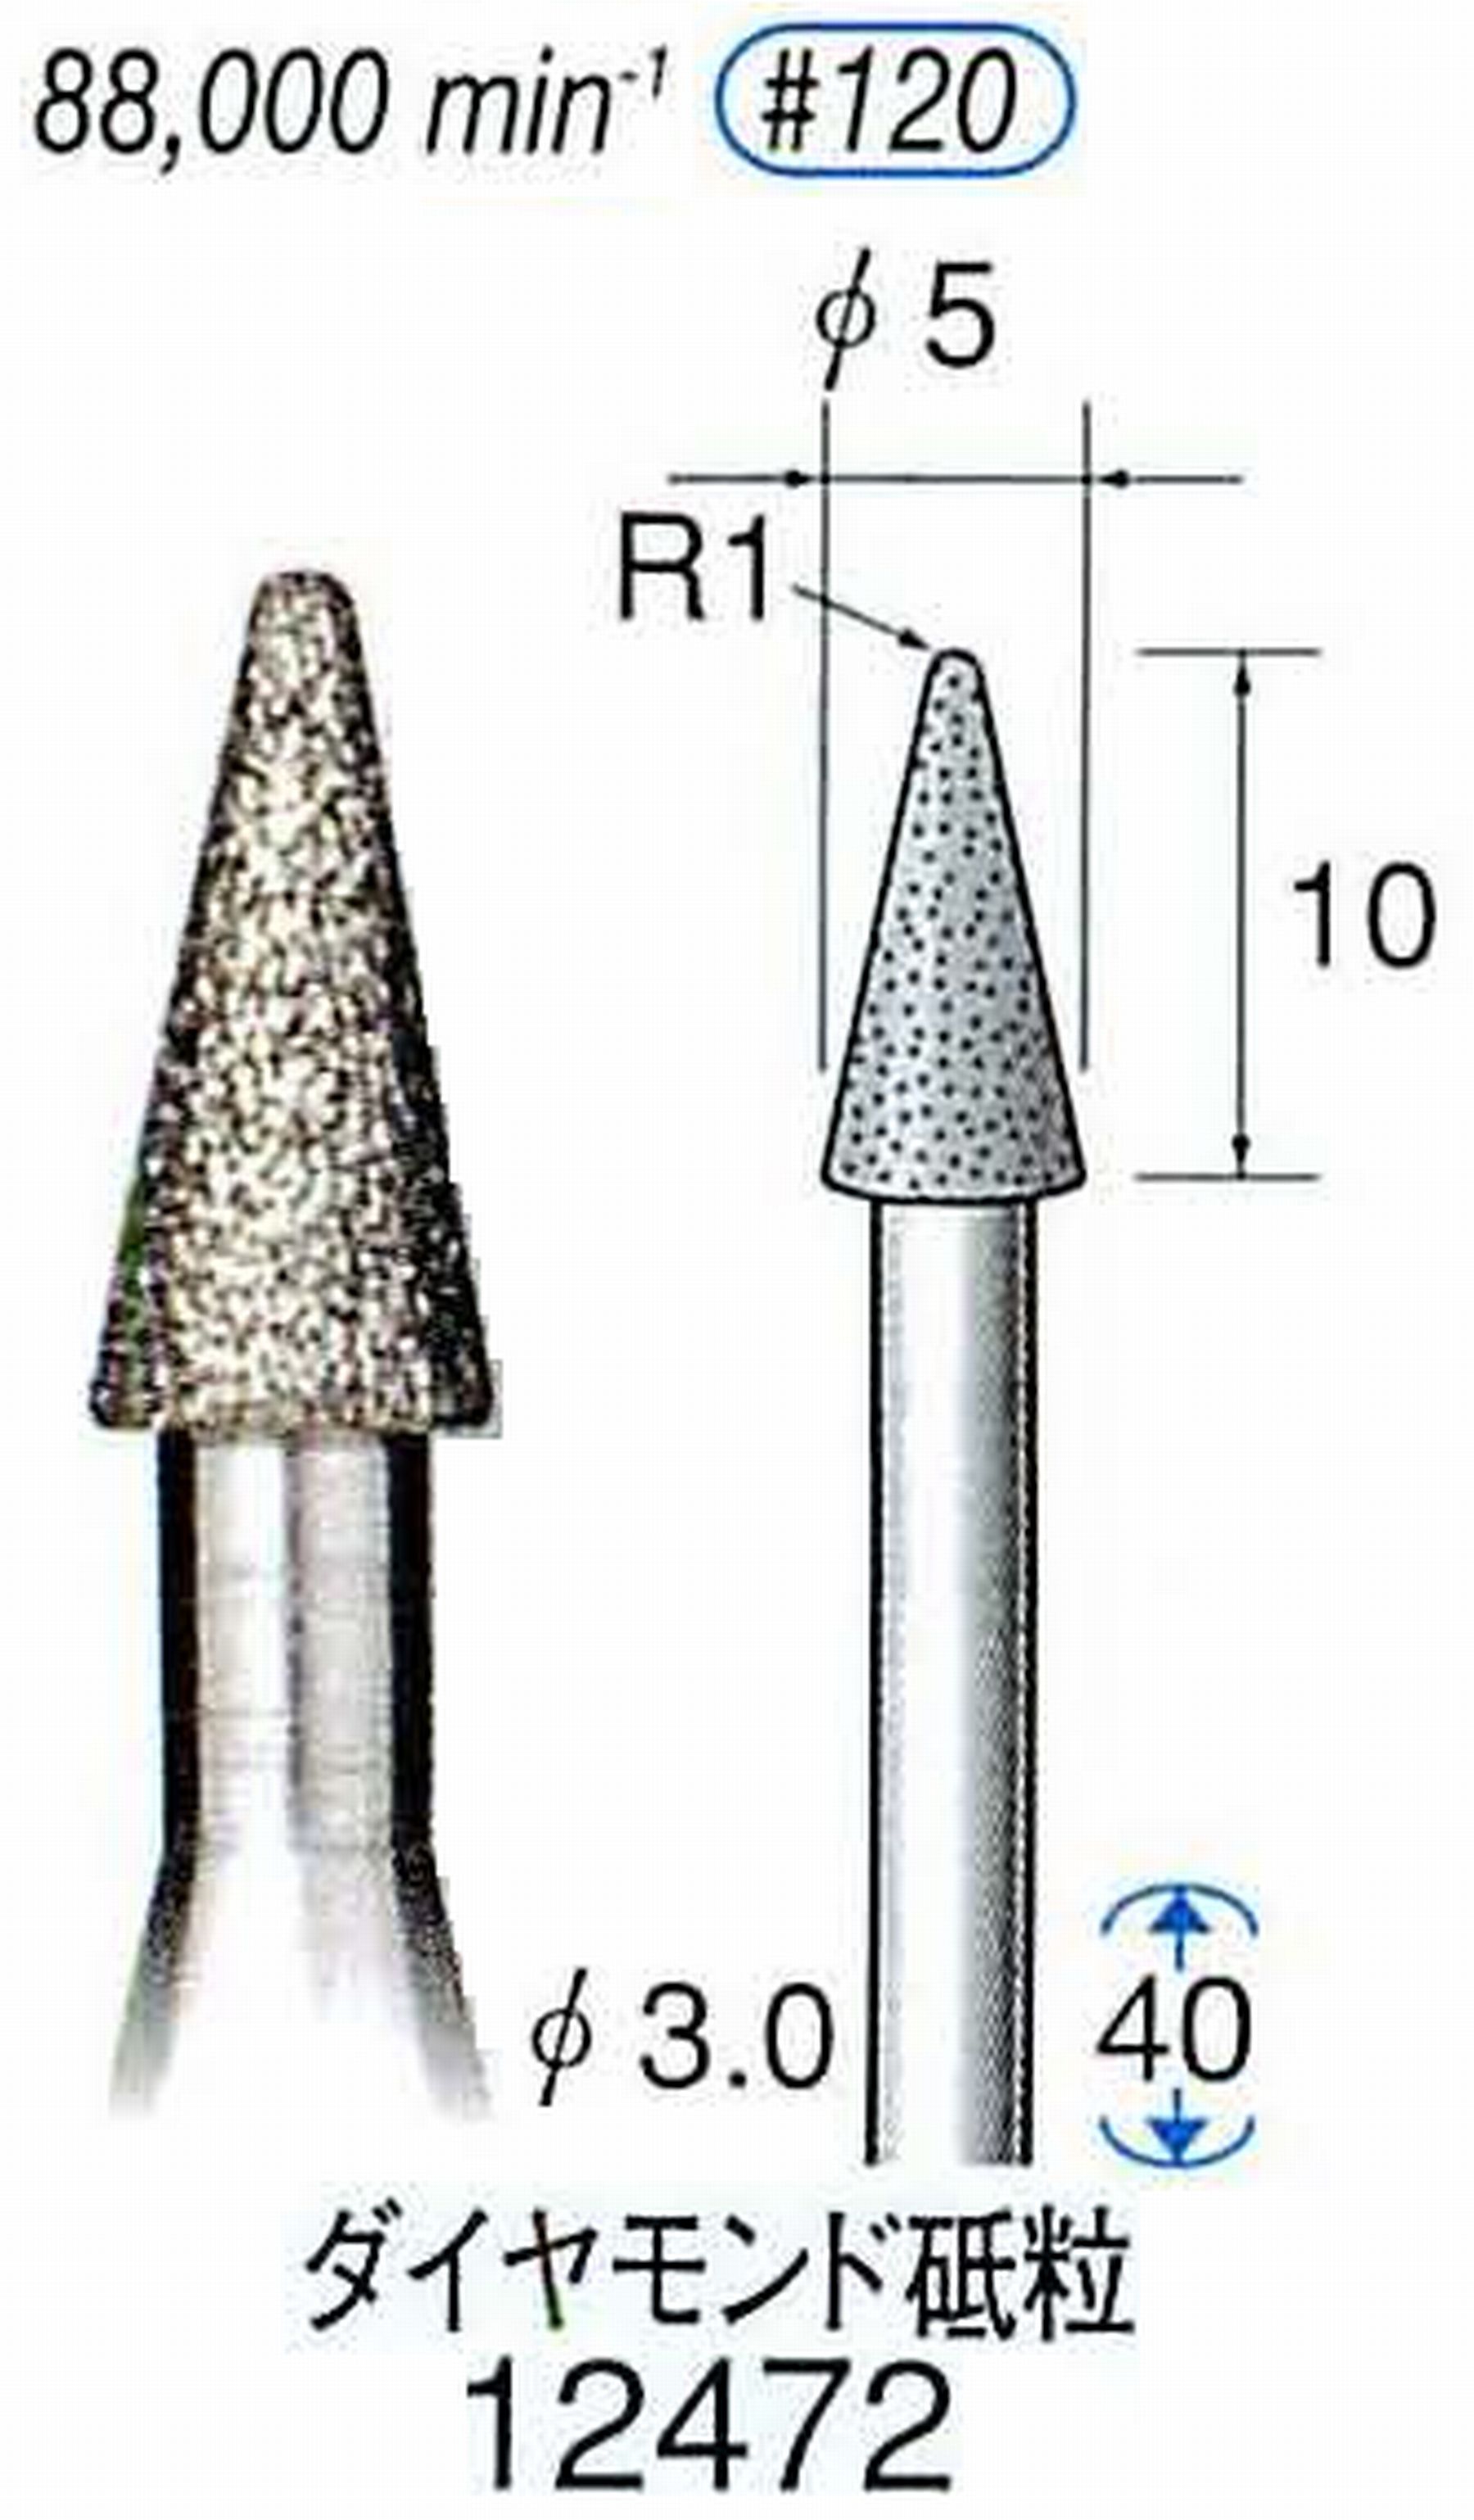 ナカニシ/NAKANISHI 電着ダイヤモンド ダイヤモンド砥粒 軸径(シャンク)φ3.0mm 12472